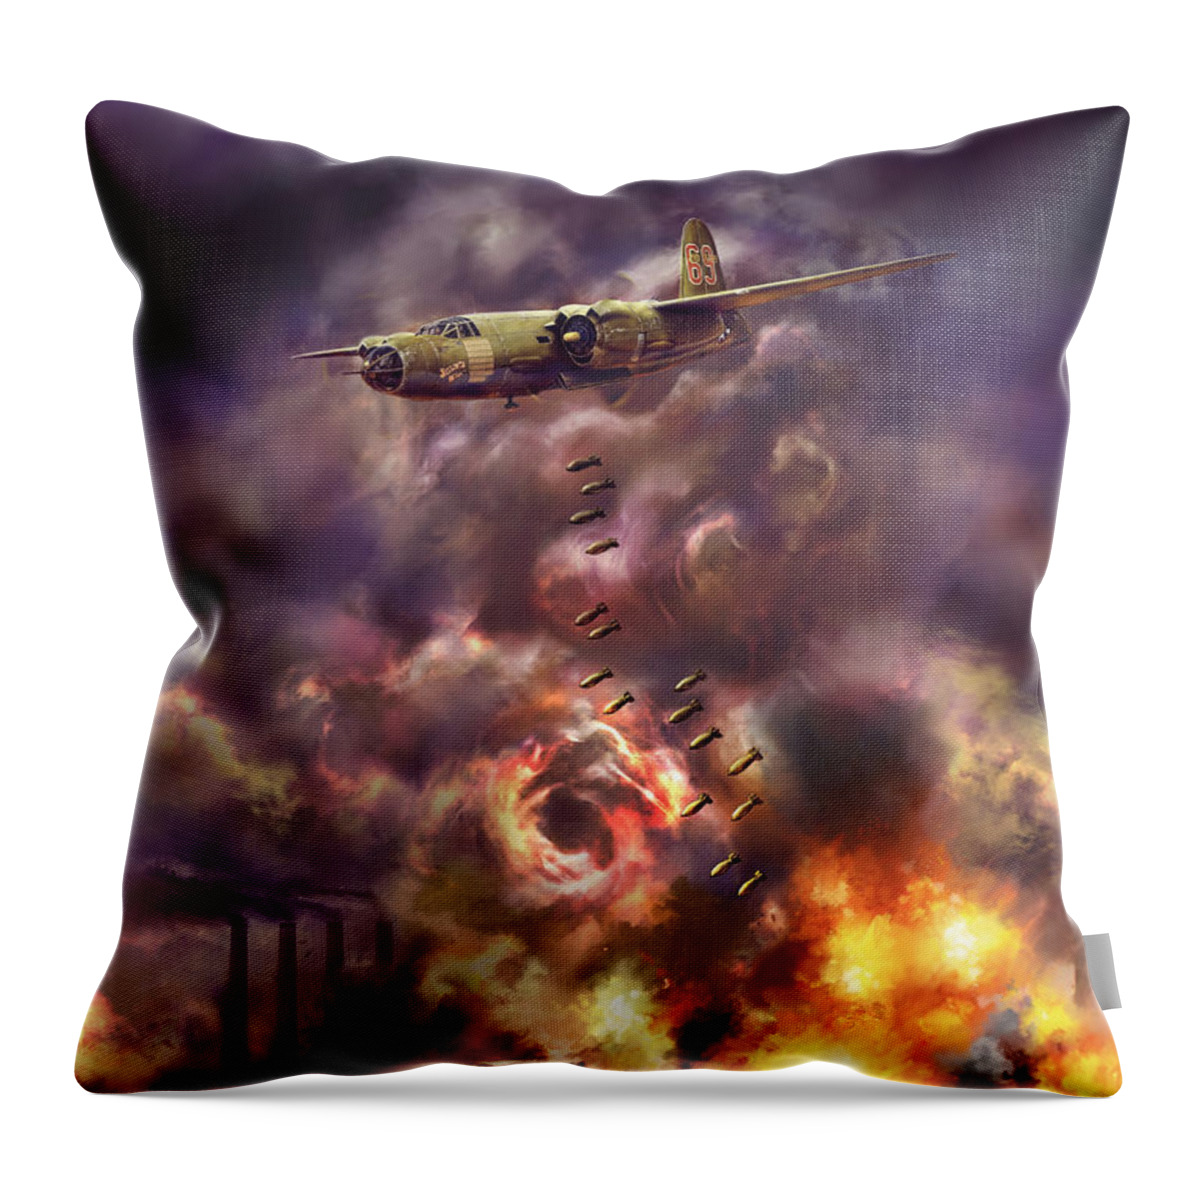 B-26 Throw Pillow featuring the digital art Low Level Hell by David Luebbert